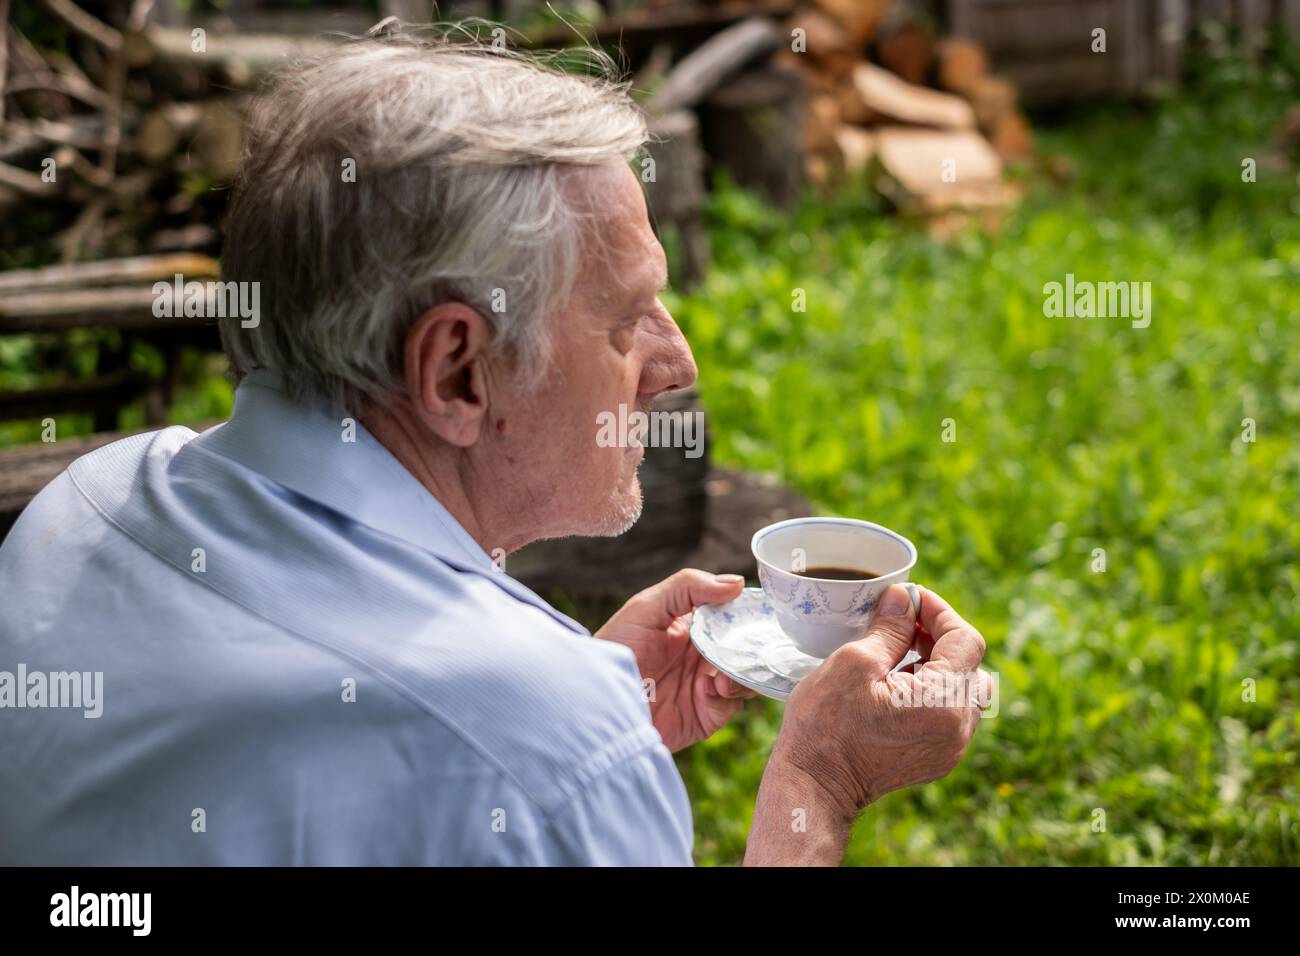 Uomo di profilo che regge un tè, guarda in lontananza in un lussureggiante giardino un momento di tranquilla riflessione e pace per anziani. Foto di alta qualità Foto Stock